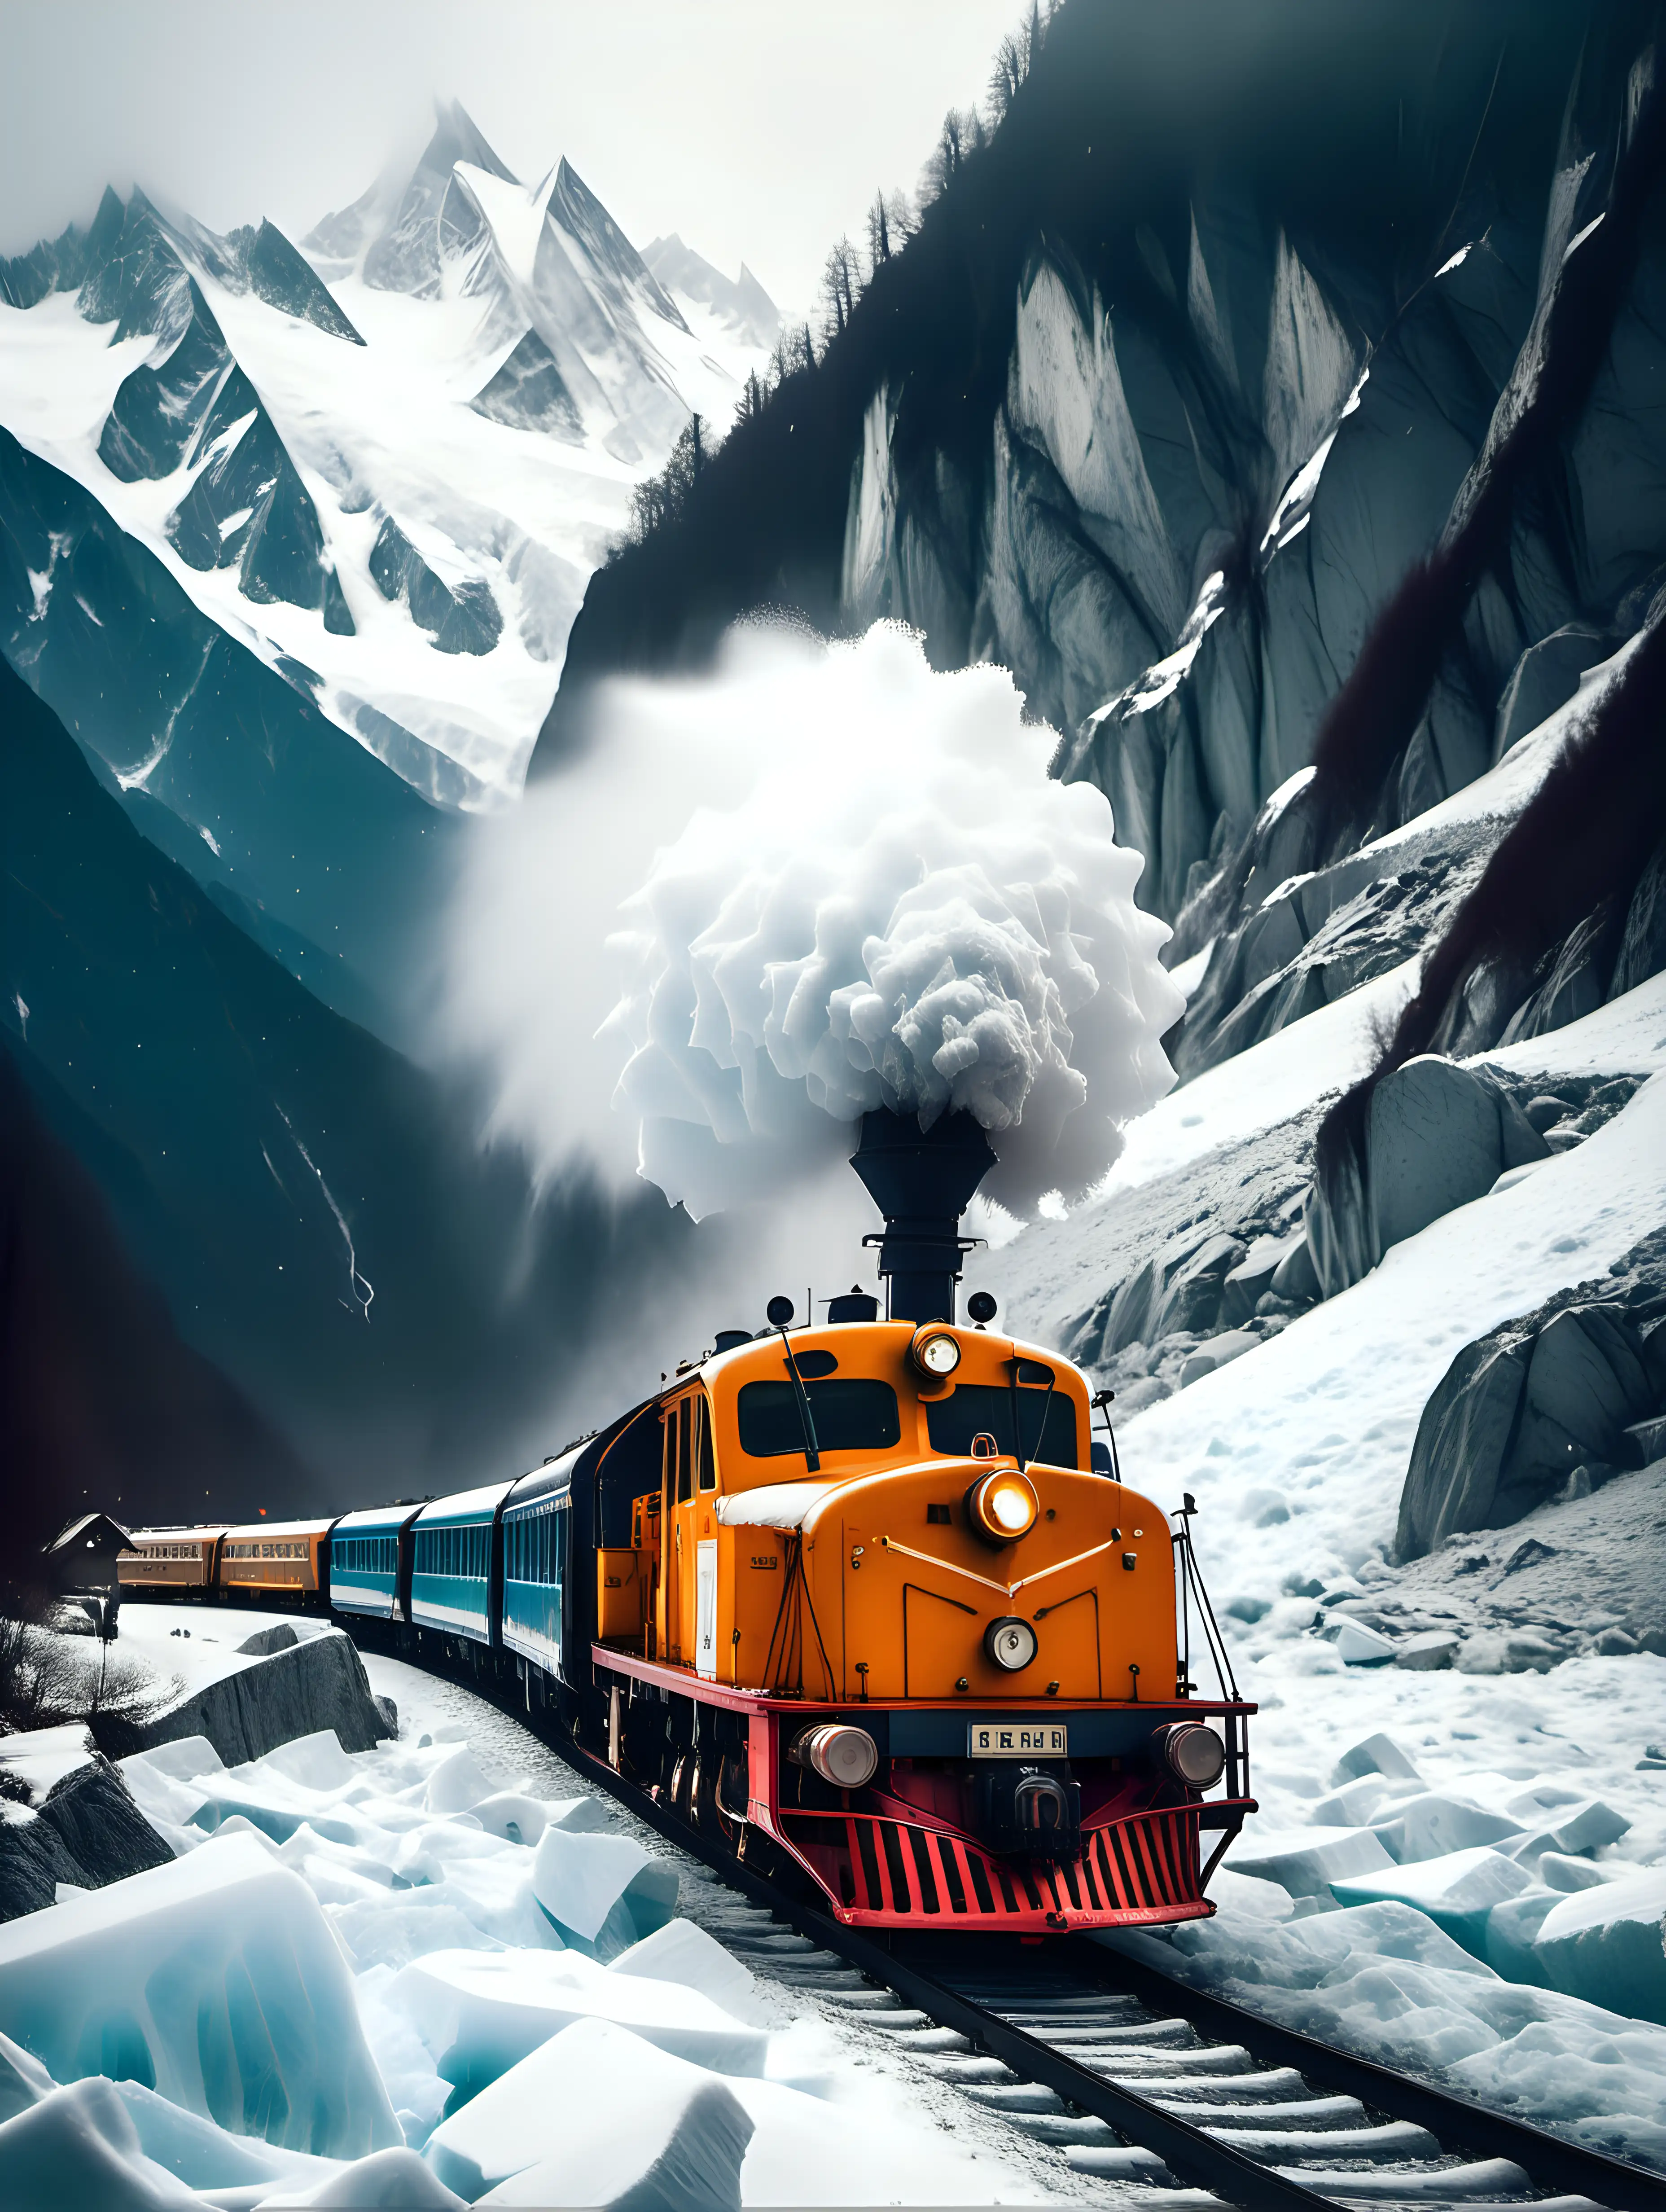 un Train du Montenvers Mer de Glace dans la vallée de chamonix.
il neige fortement.
Ambiance vintage
gros plan sur la locomotive.
la mer de glace et le mont blanc en arriere plan